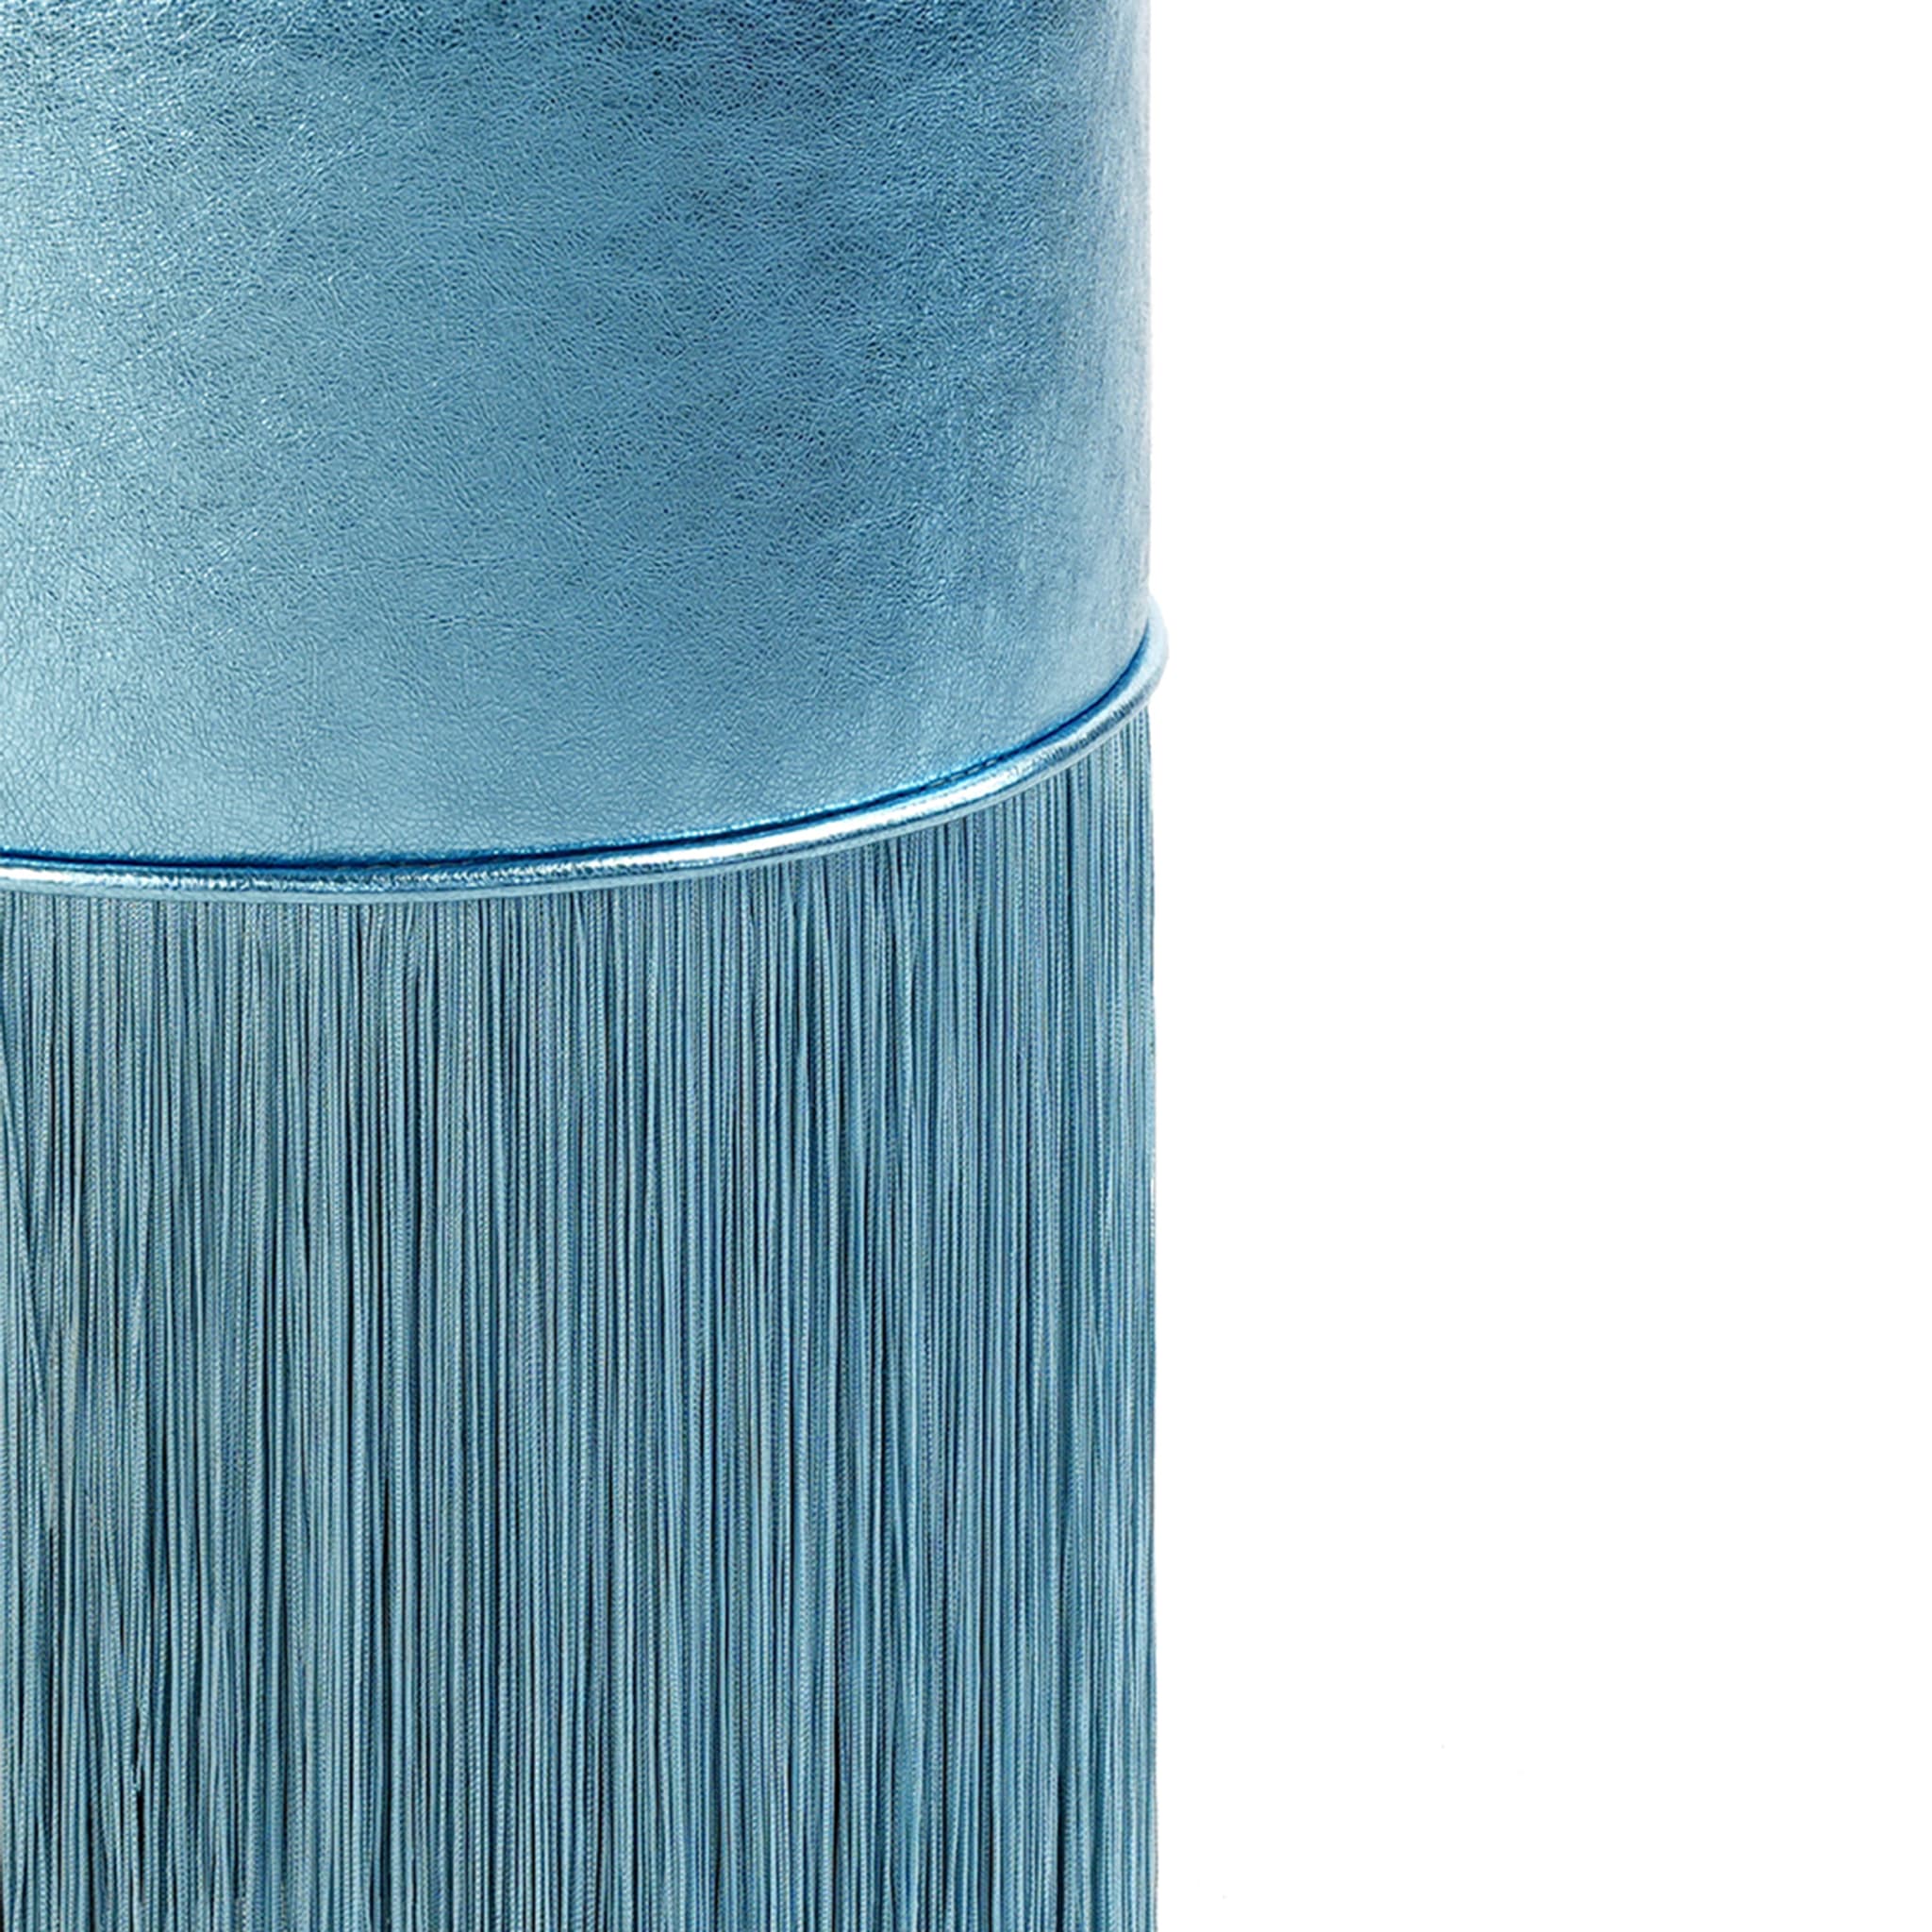 Hellblau schimmernder Pouf aus Metallic-Leder von Lorenza Bozzoli - Alternative Ansicht 1